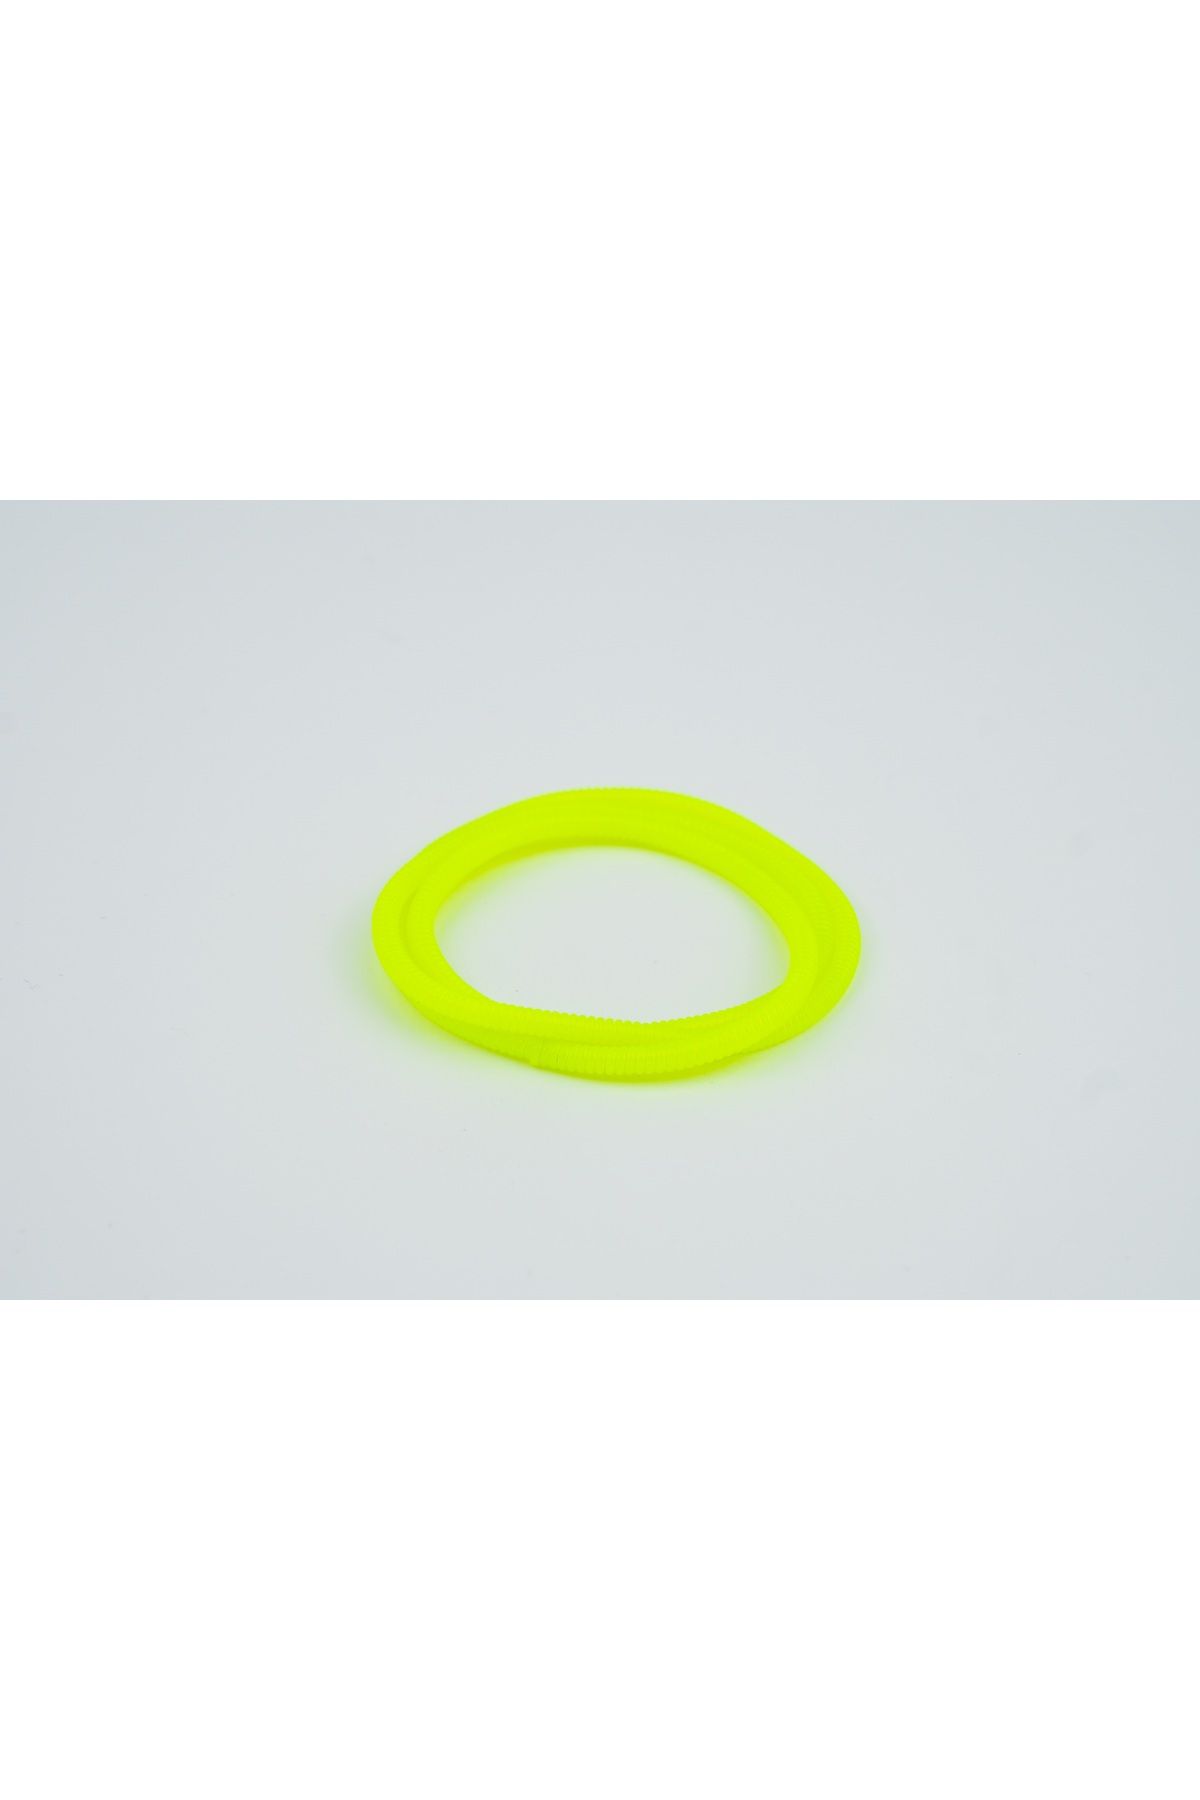 Spelt Kulaklık Kablosu Ince Kablo Kordon Koruyucu Spiral Sarma Kılıf Koruma Neon Yeşil 50cm 4 Adet